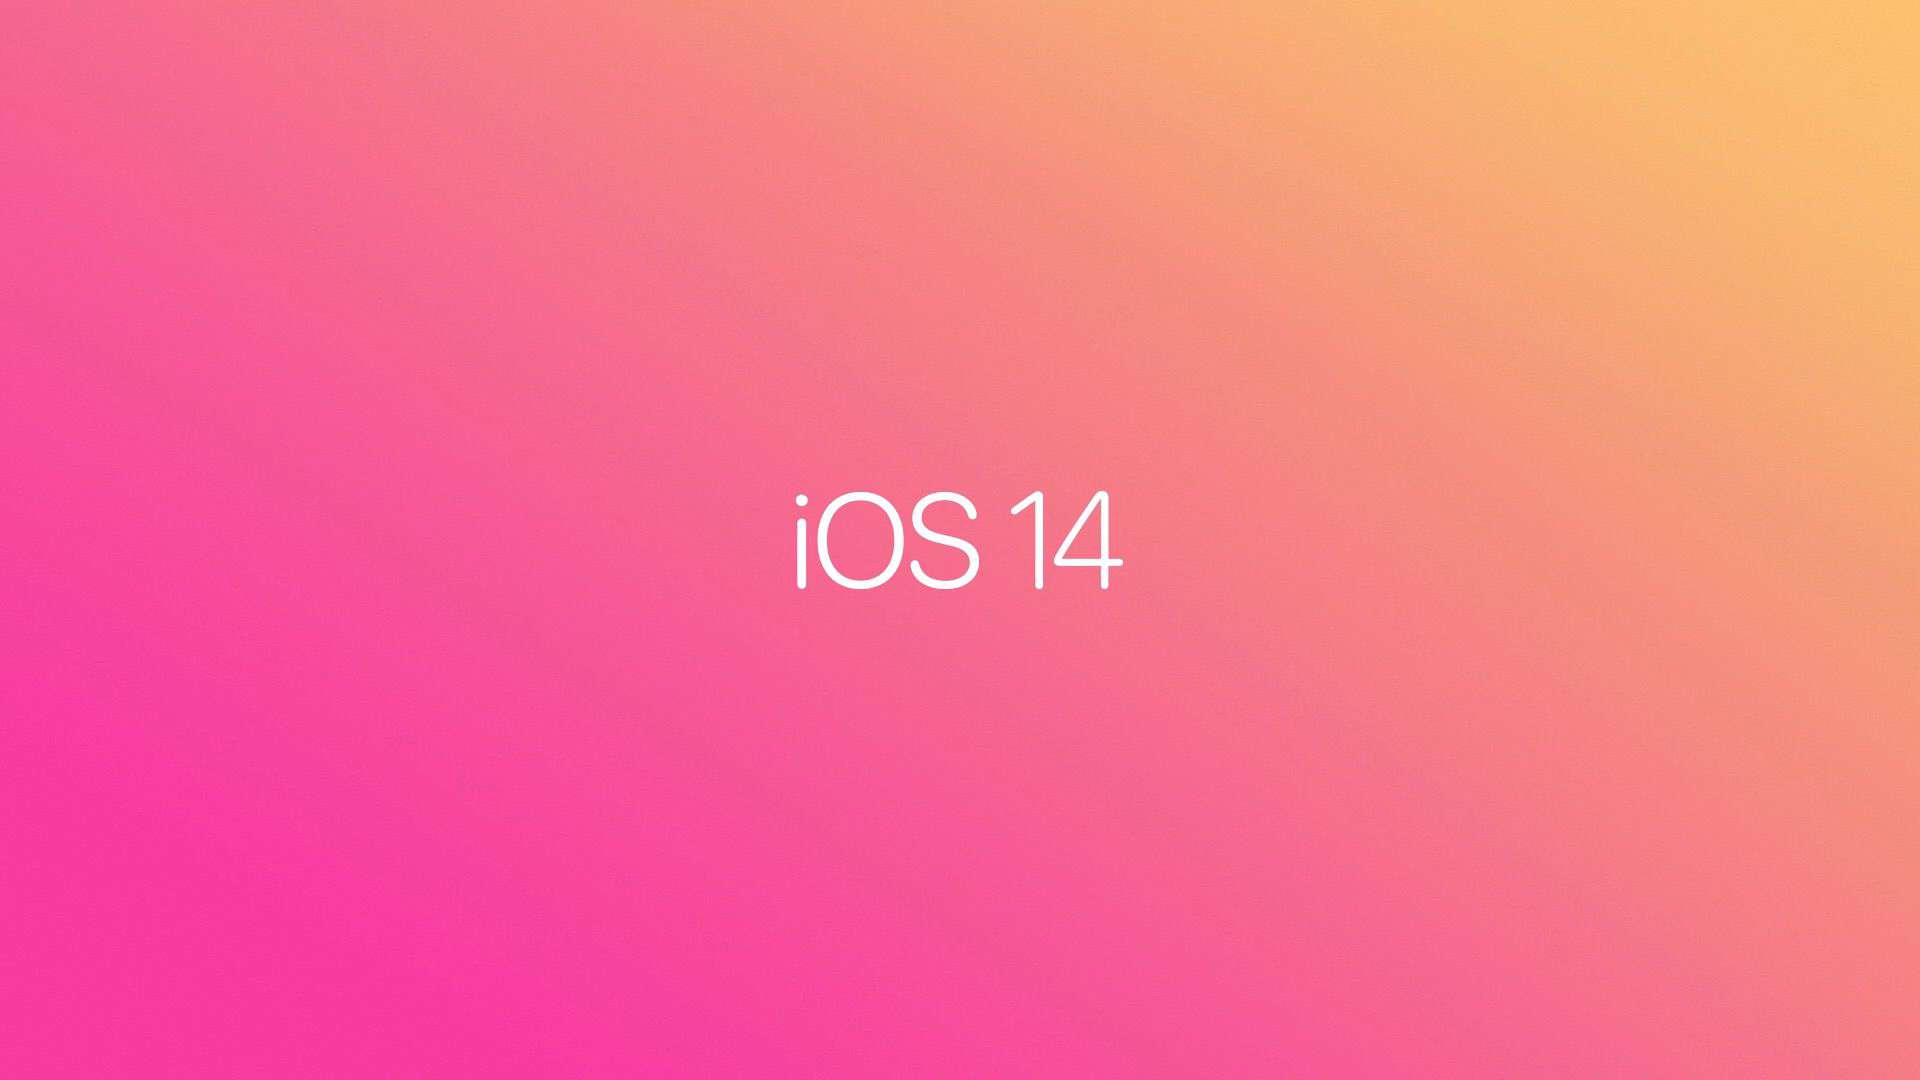 Đây là những cải tiến được bổ sung trong bản cập nhật iOS 14 và iPadOS 14 beta 3 vừa được phát hành